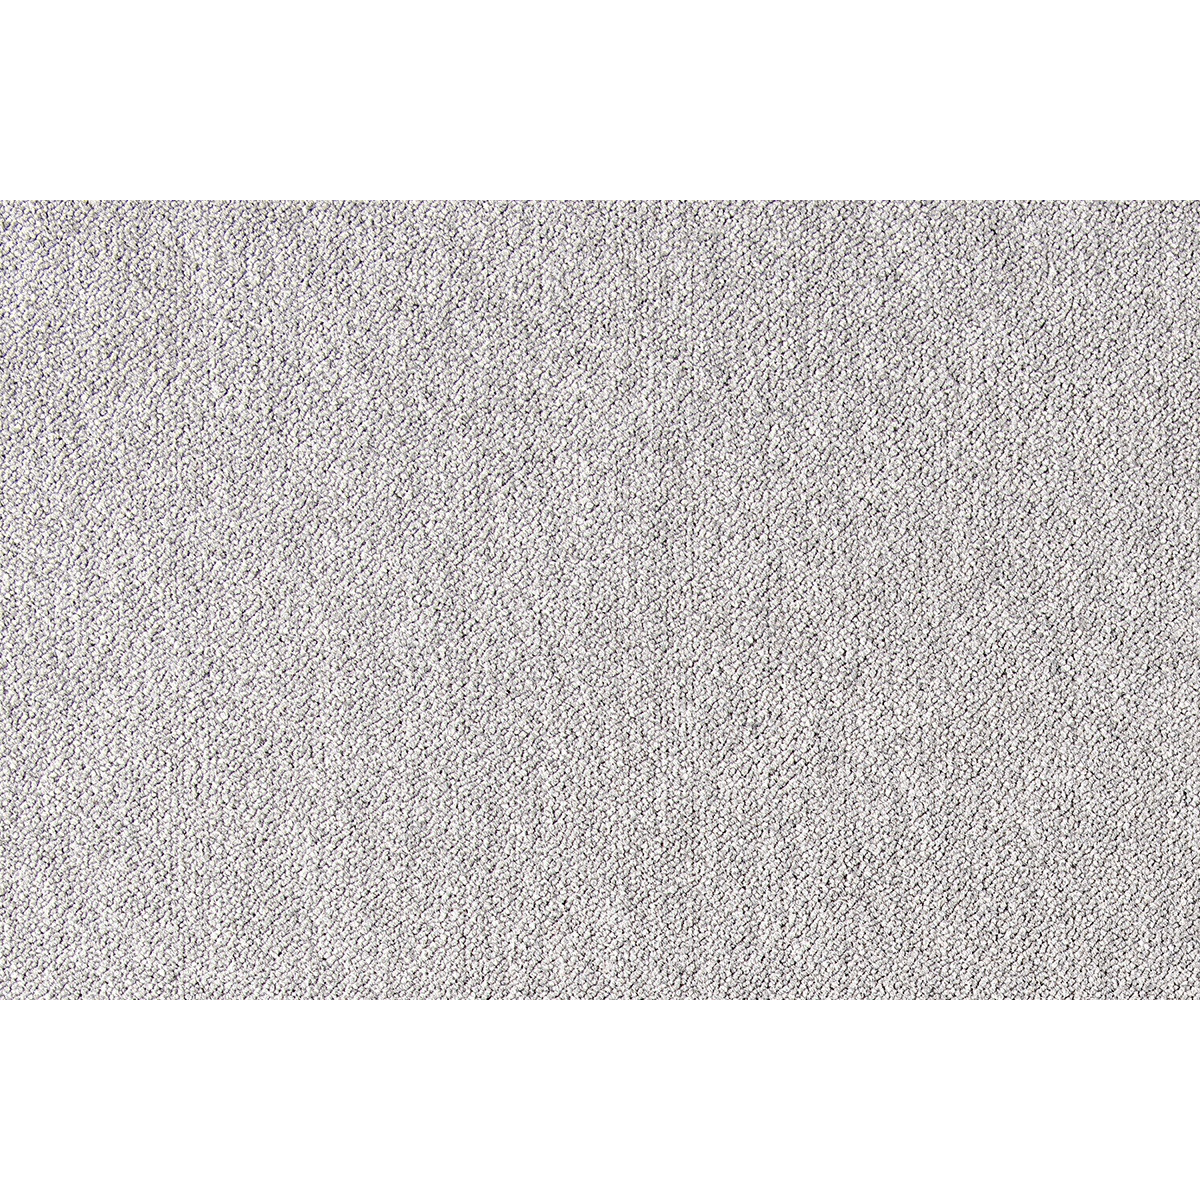 Metrážny koberec Cobalt SDN 64041 - AB svetlo šedý, záťažový